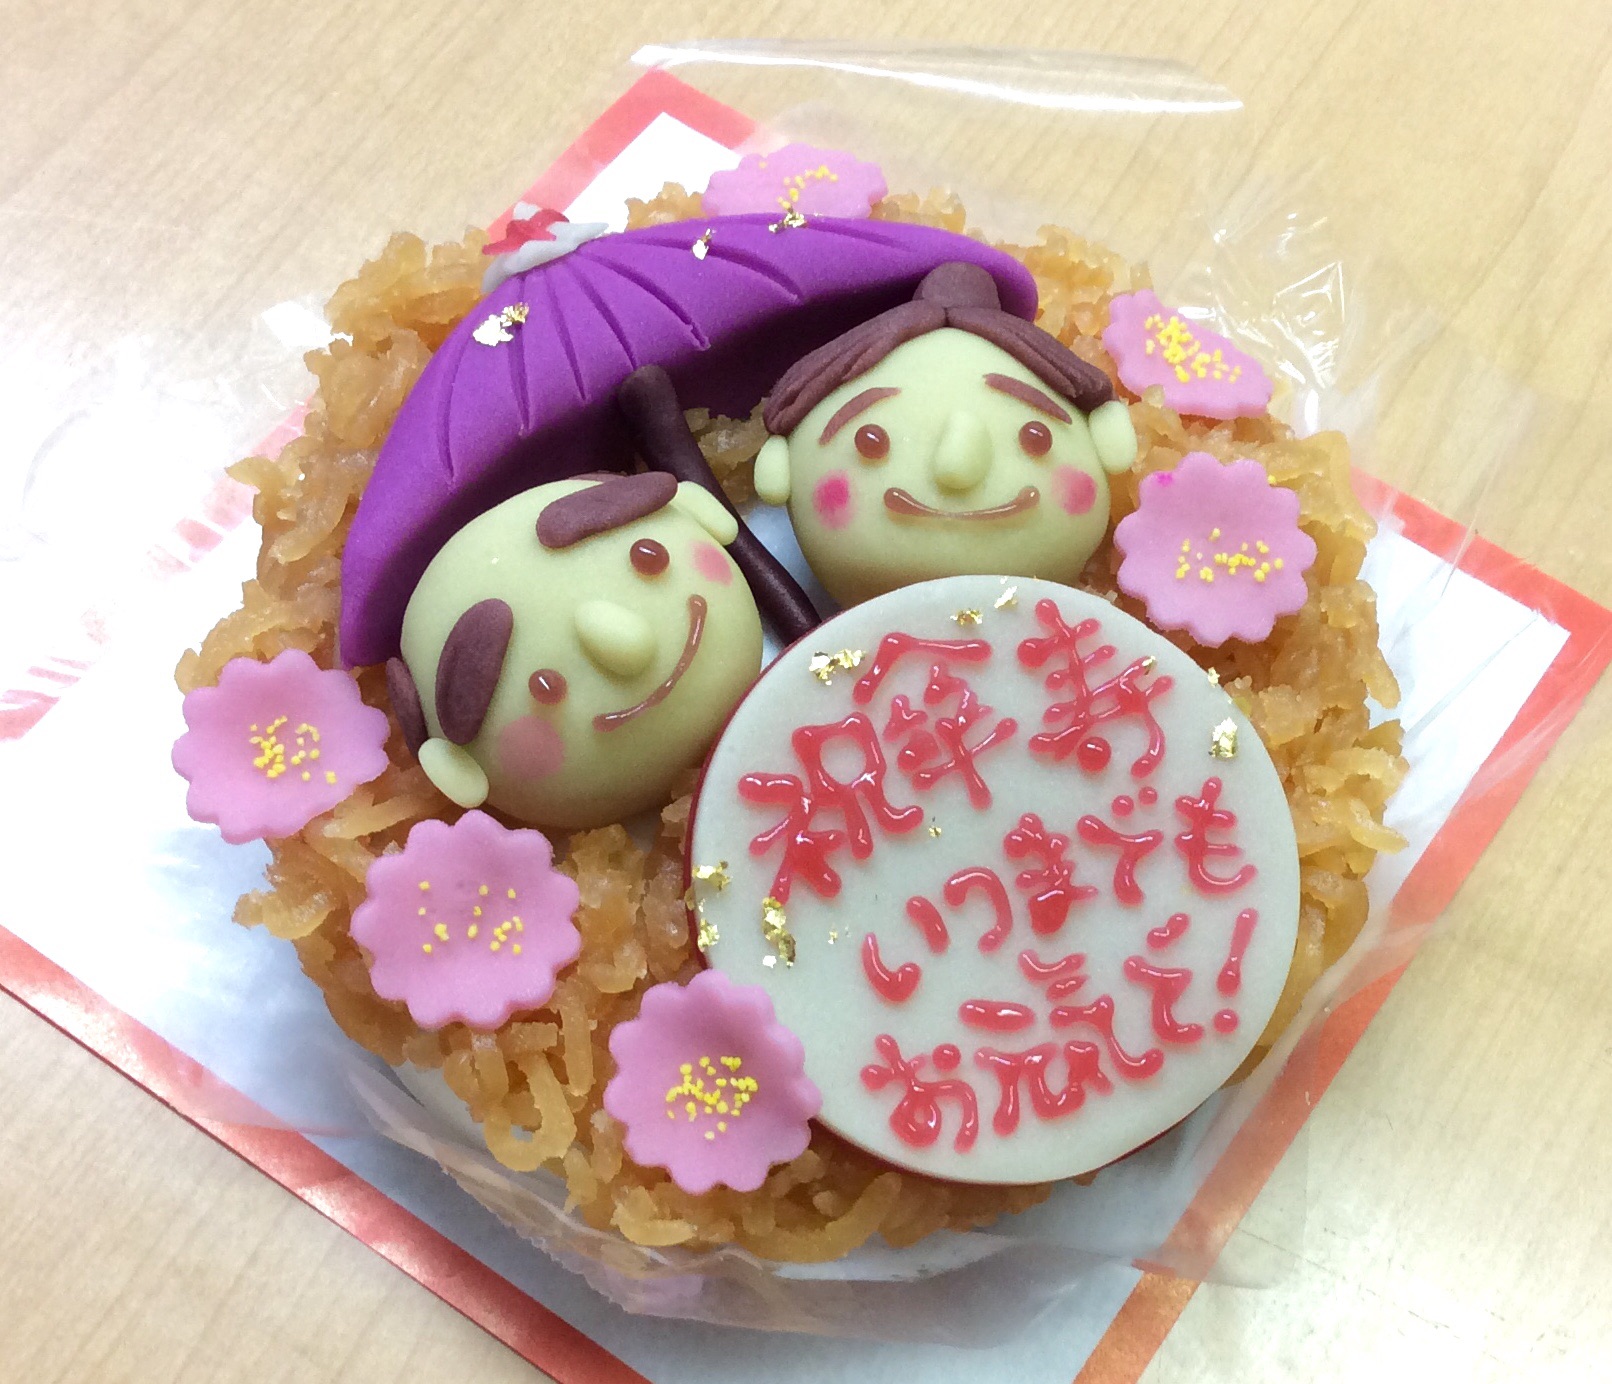 菓子処 喜久春 傘寿のお祝に和菓子ケーキをご注文いただきました